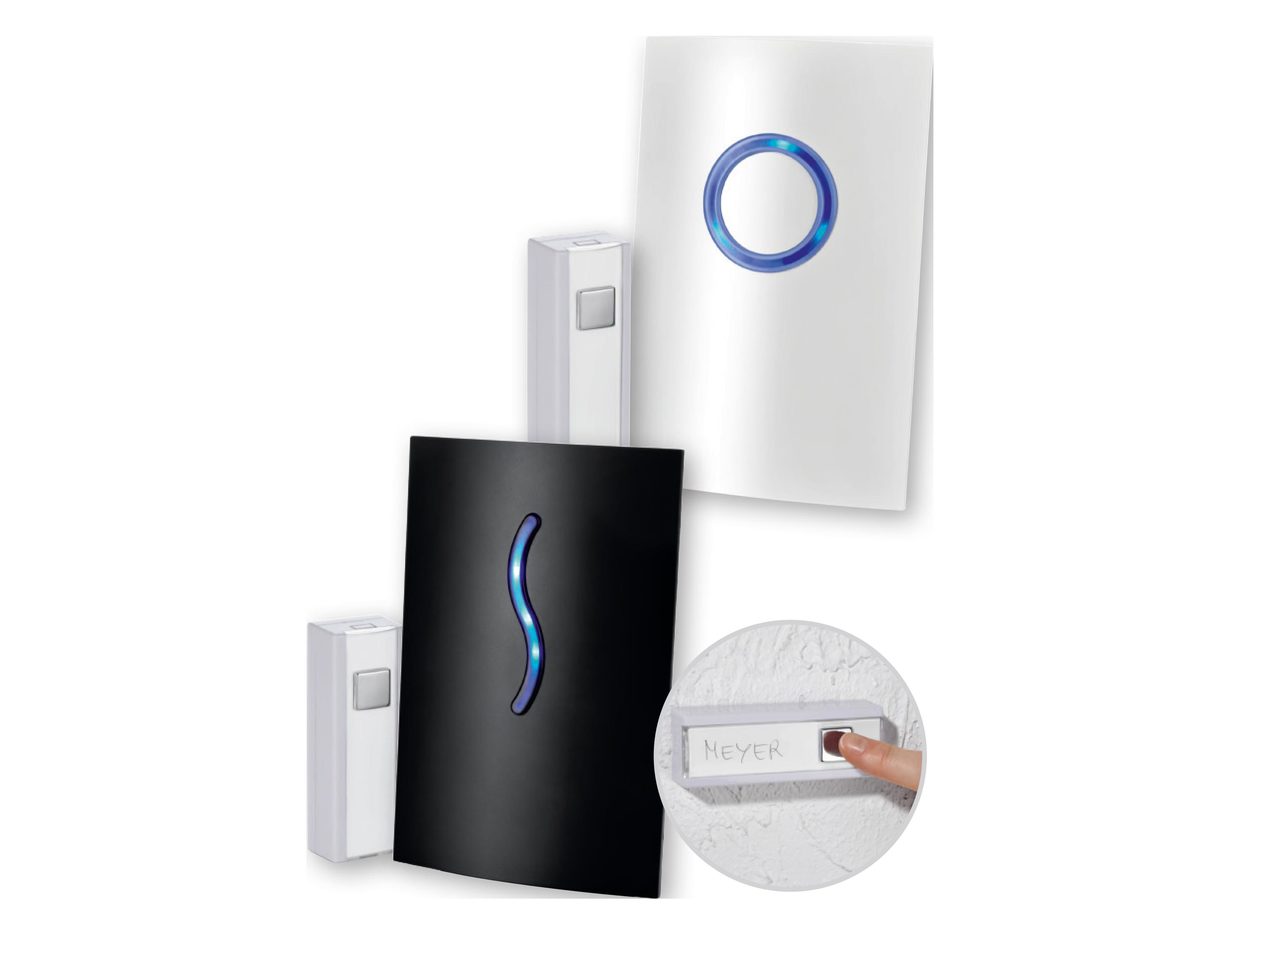 SILVERCREST(R) Premium Wireless YEAR Doorbell